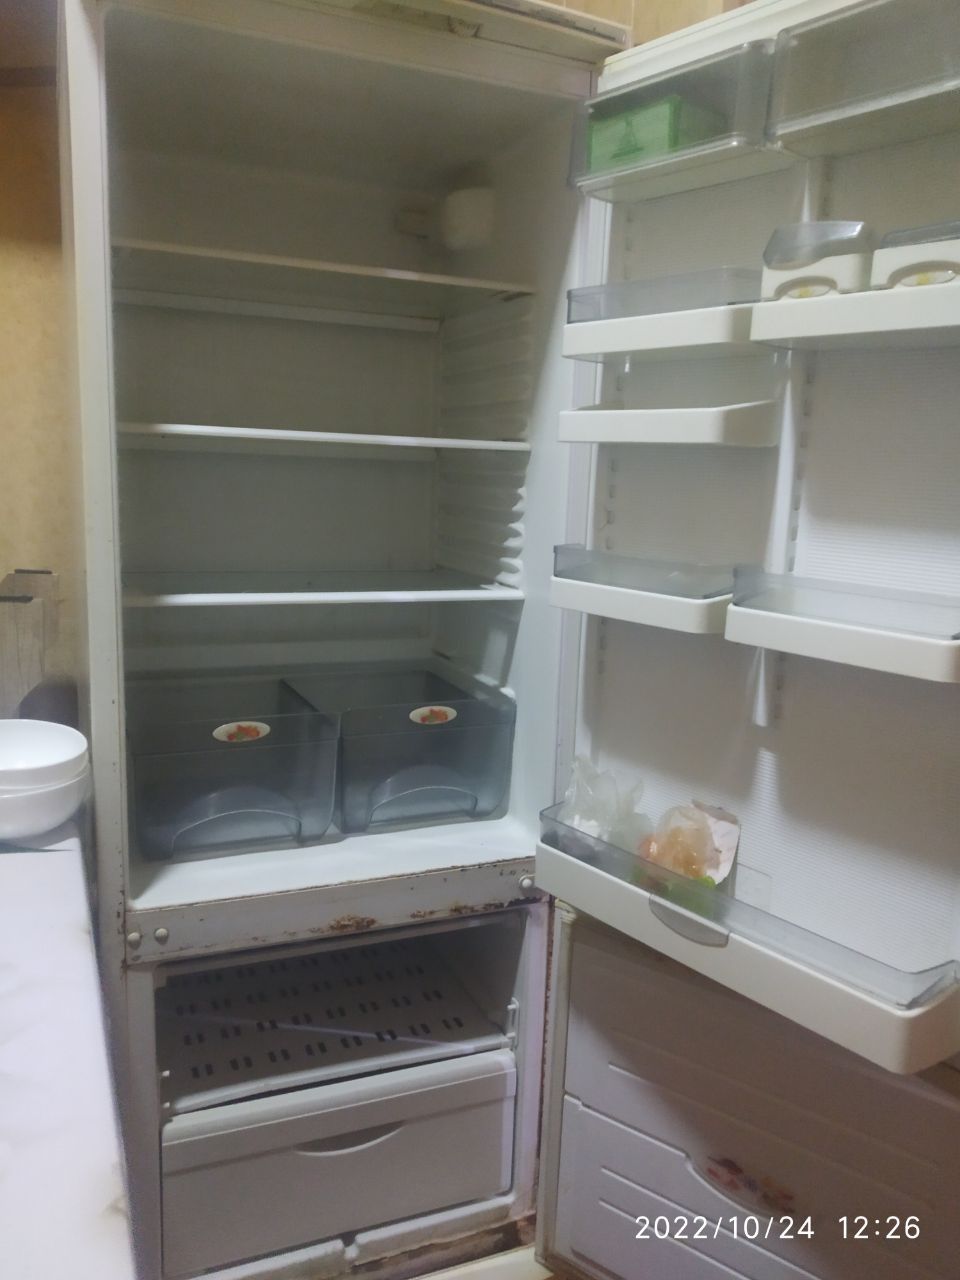 Минск холодильник